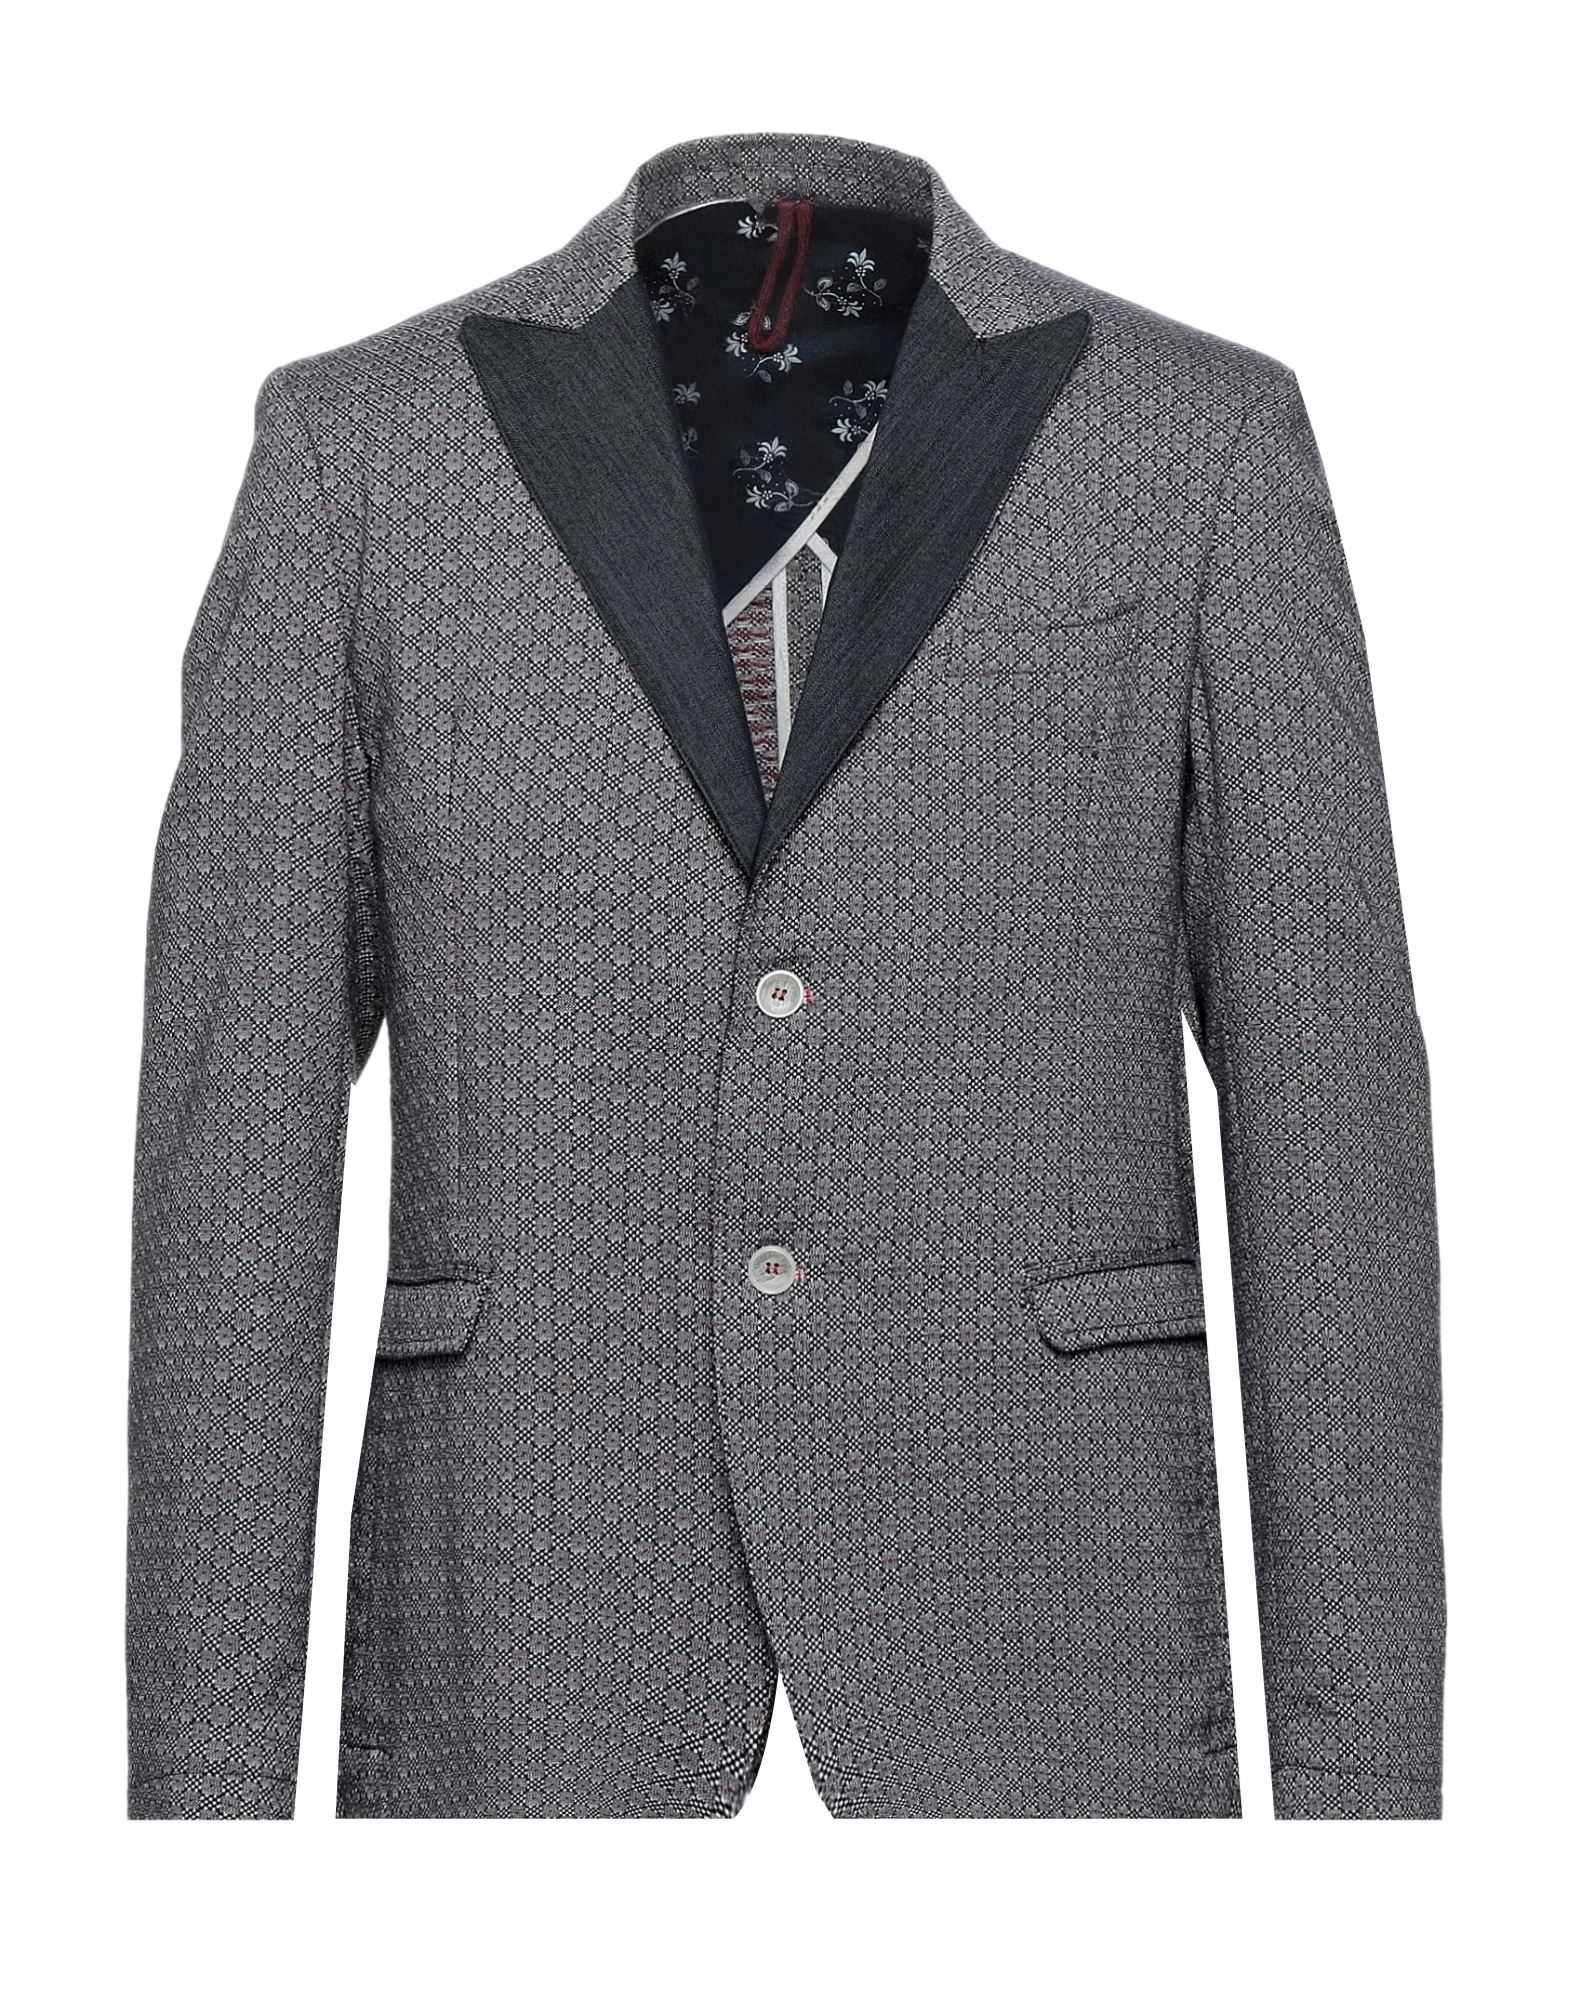 GEAN LUC Paris Suit jackets